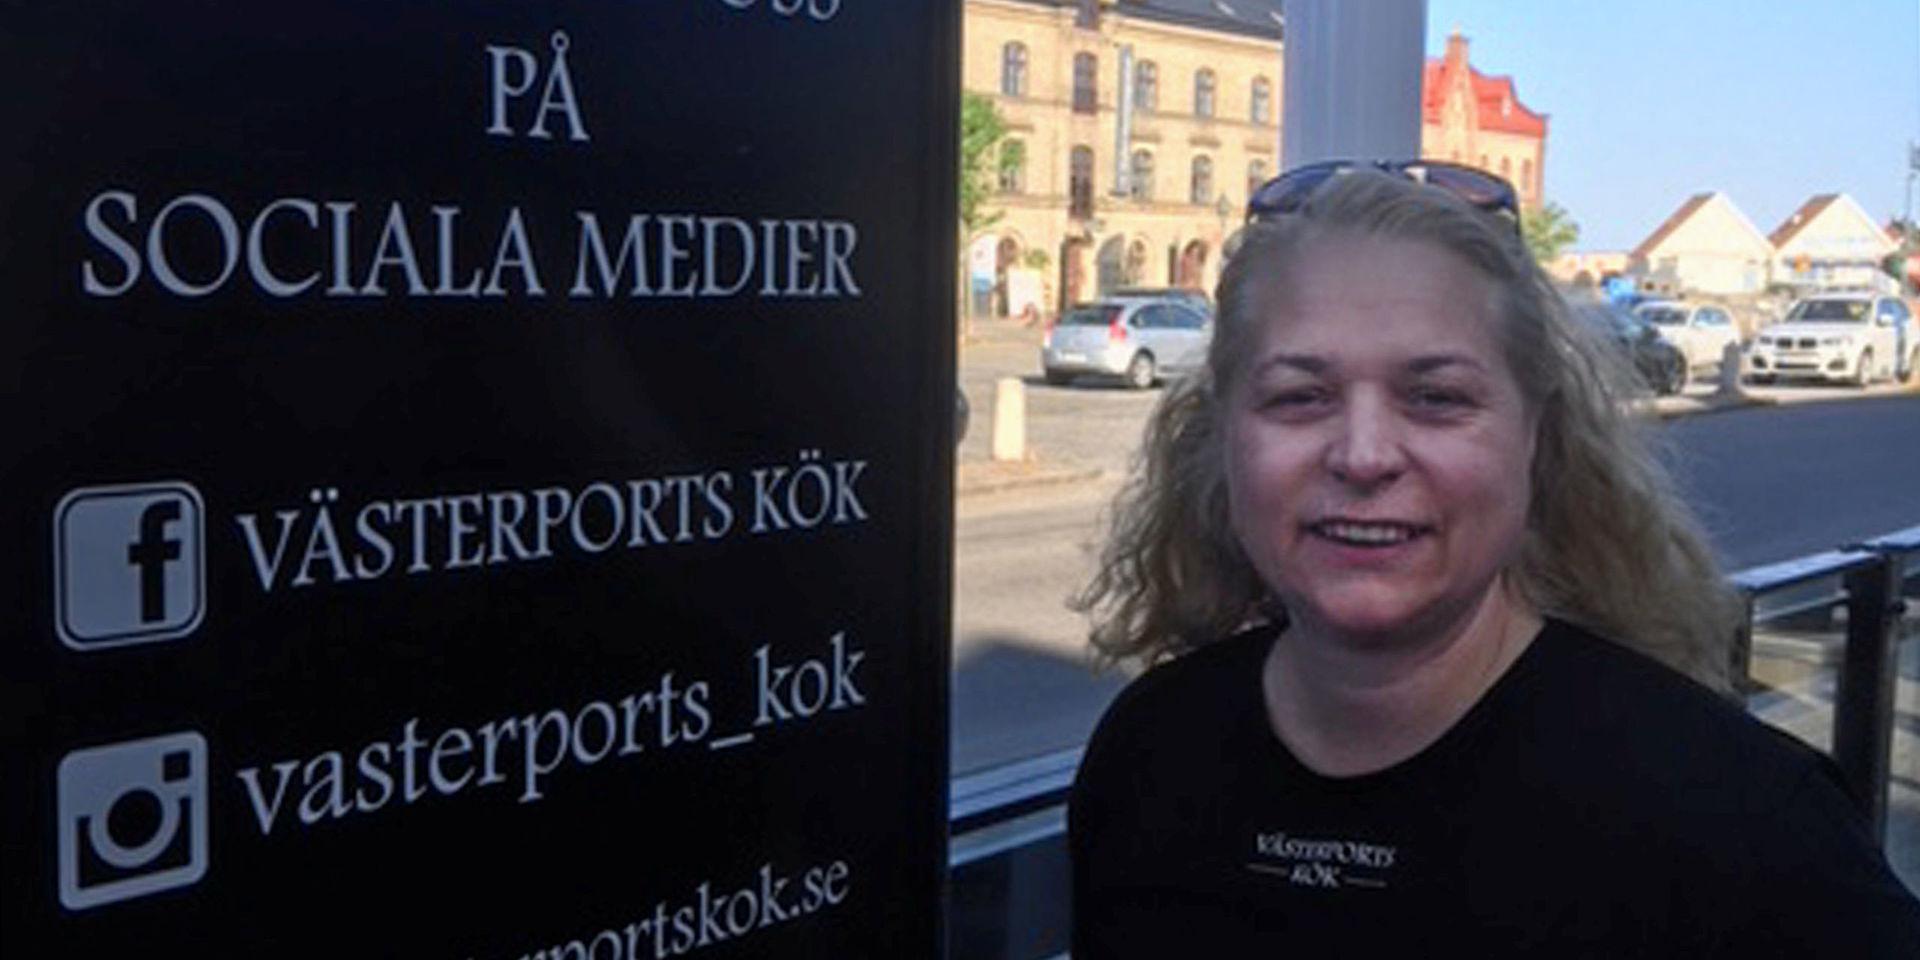 Ulrika Lagergren, ägare till Västerports kök och ordförande i Varbergs Krögarförening.